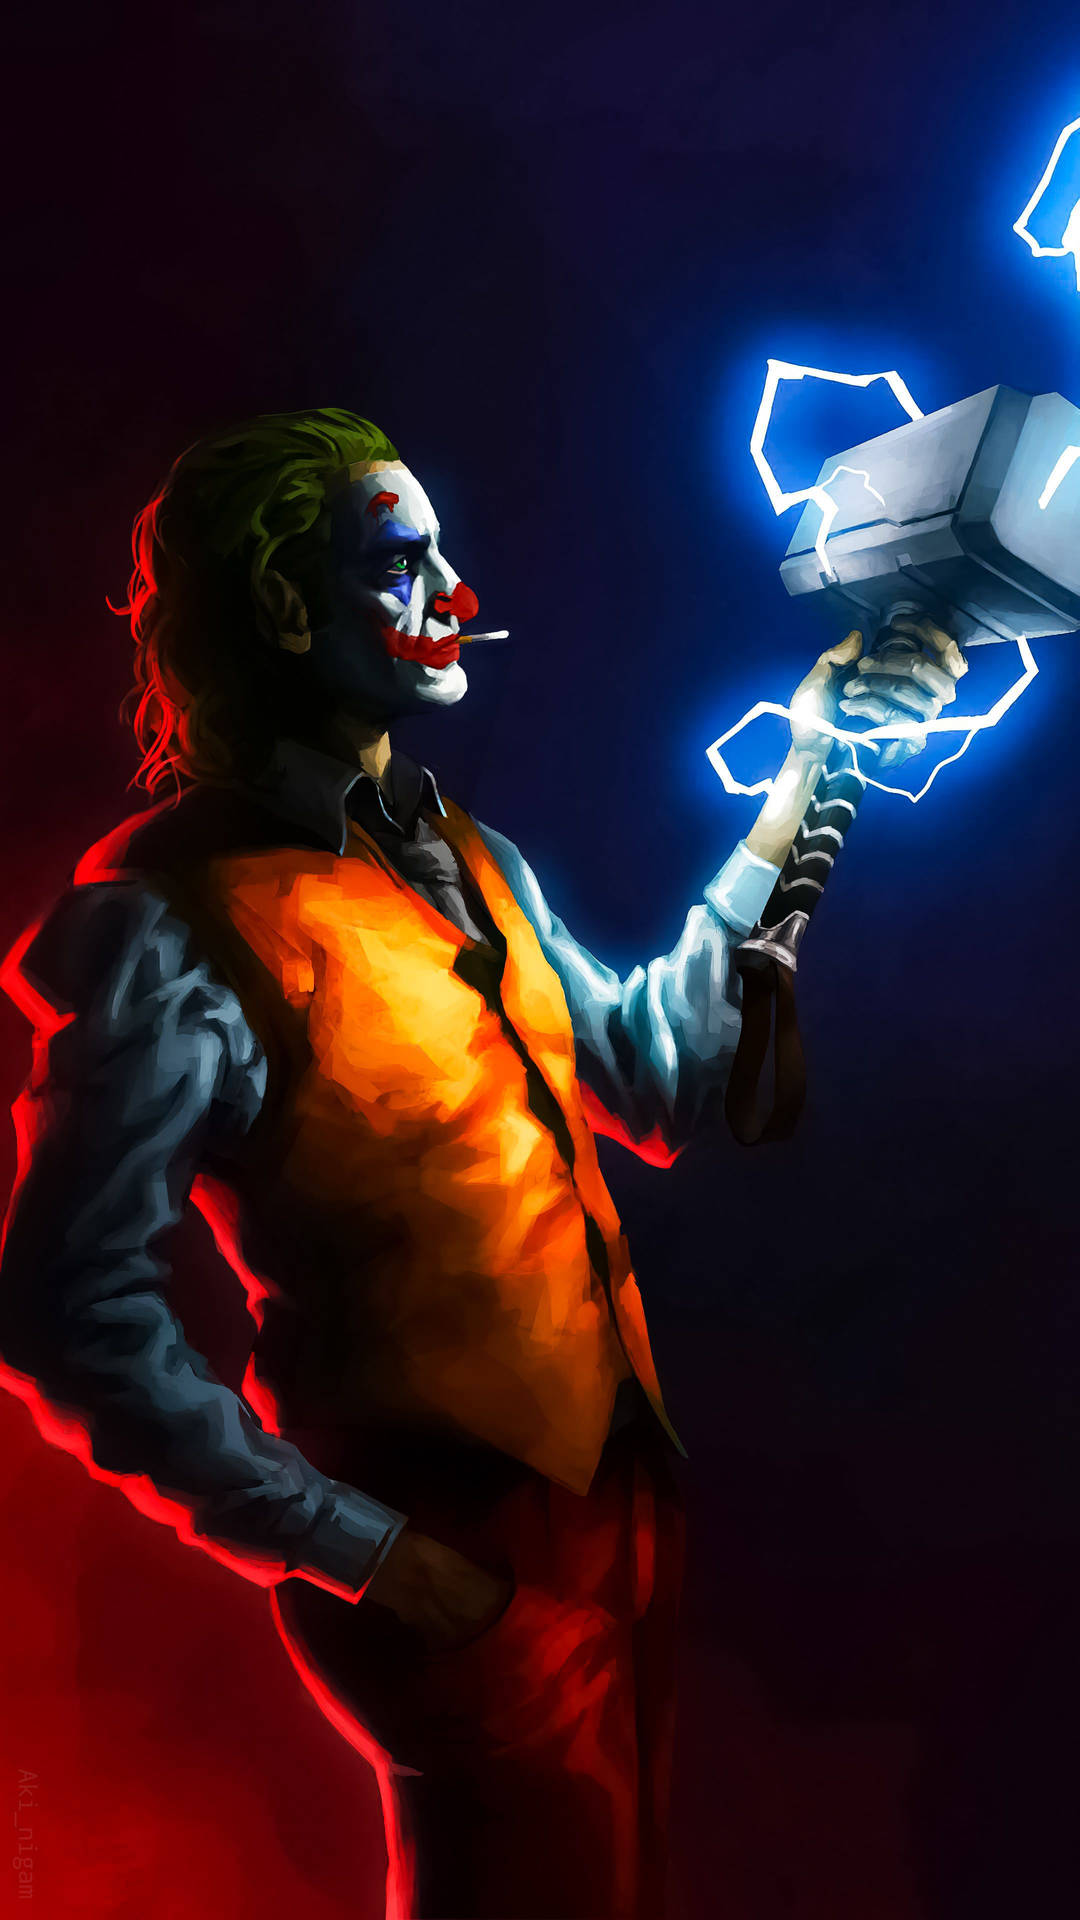 Joker iPhone With Blue Stormbreaker Wallpaper